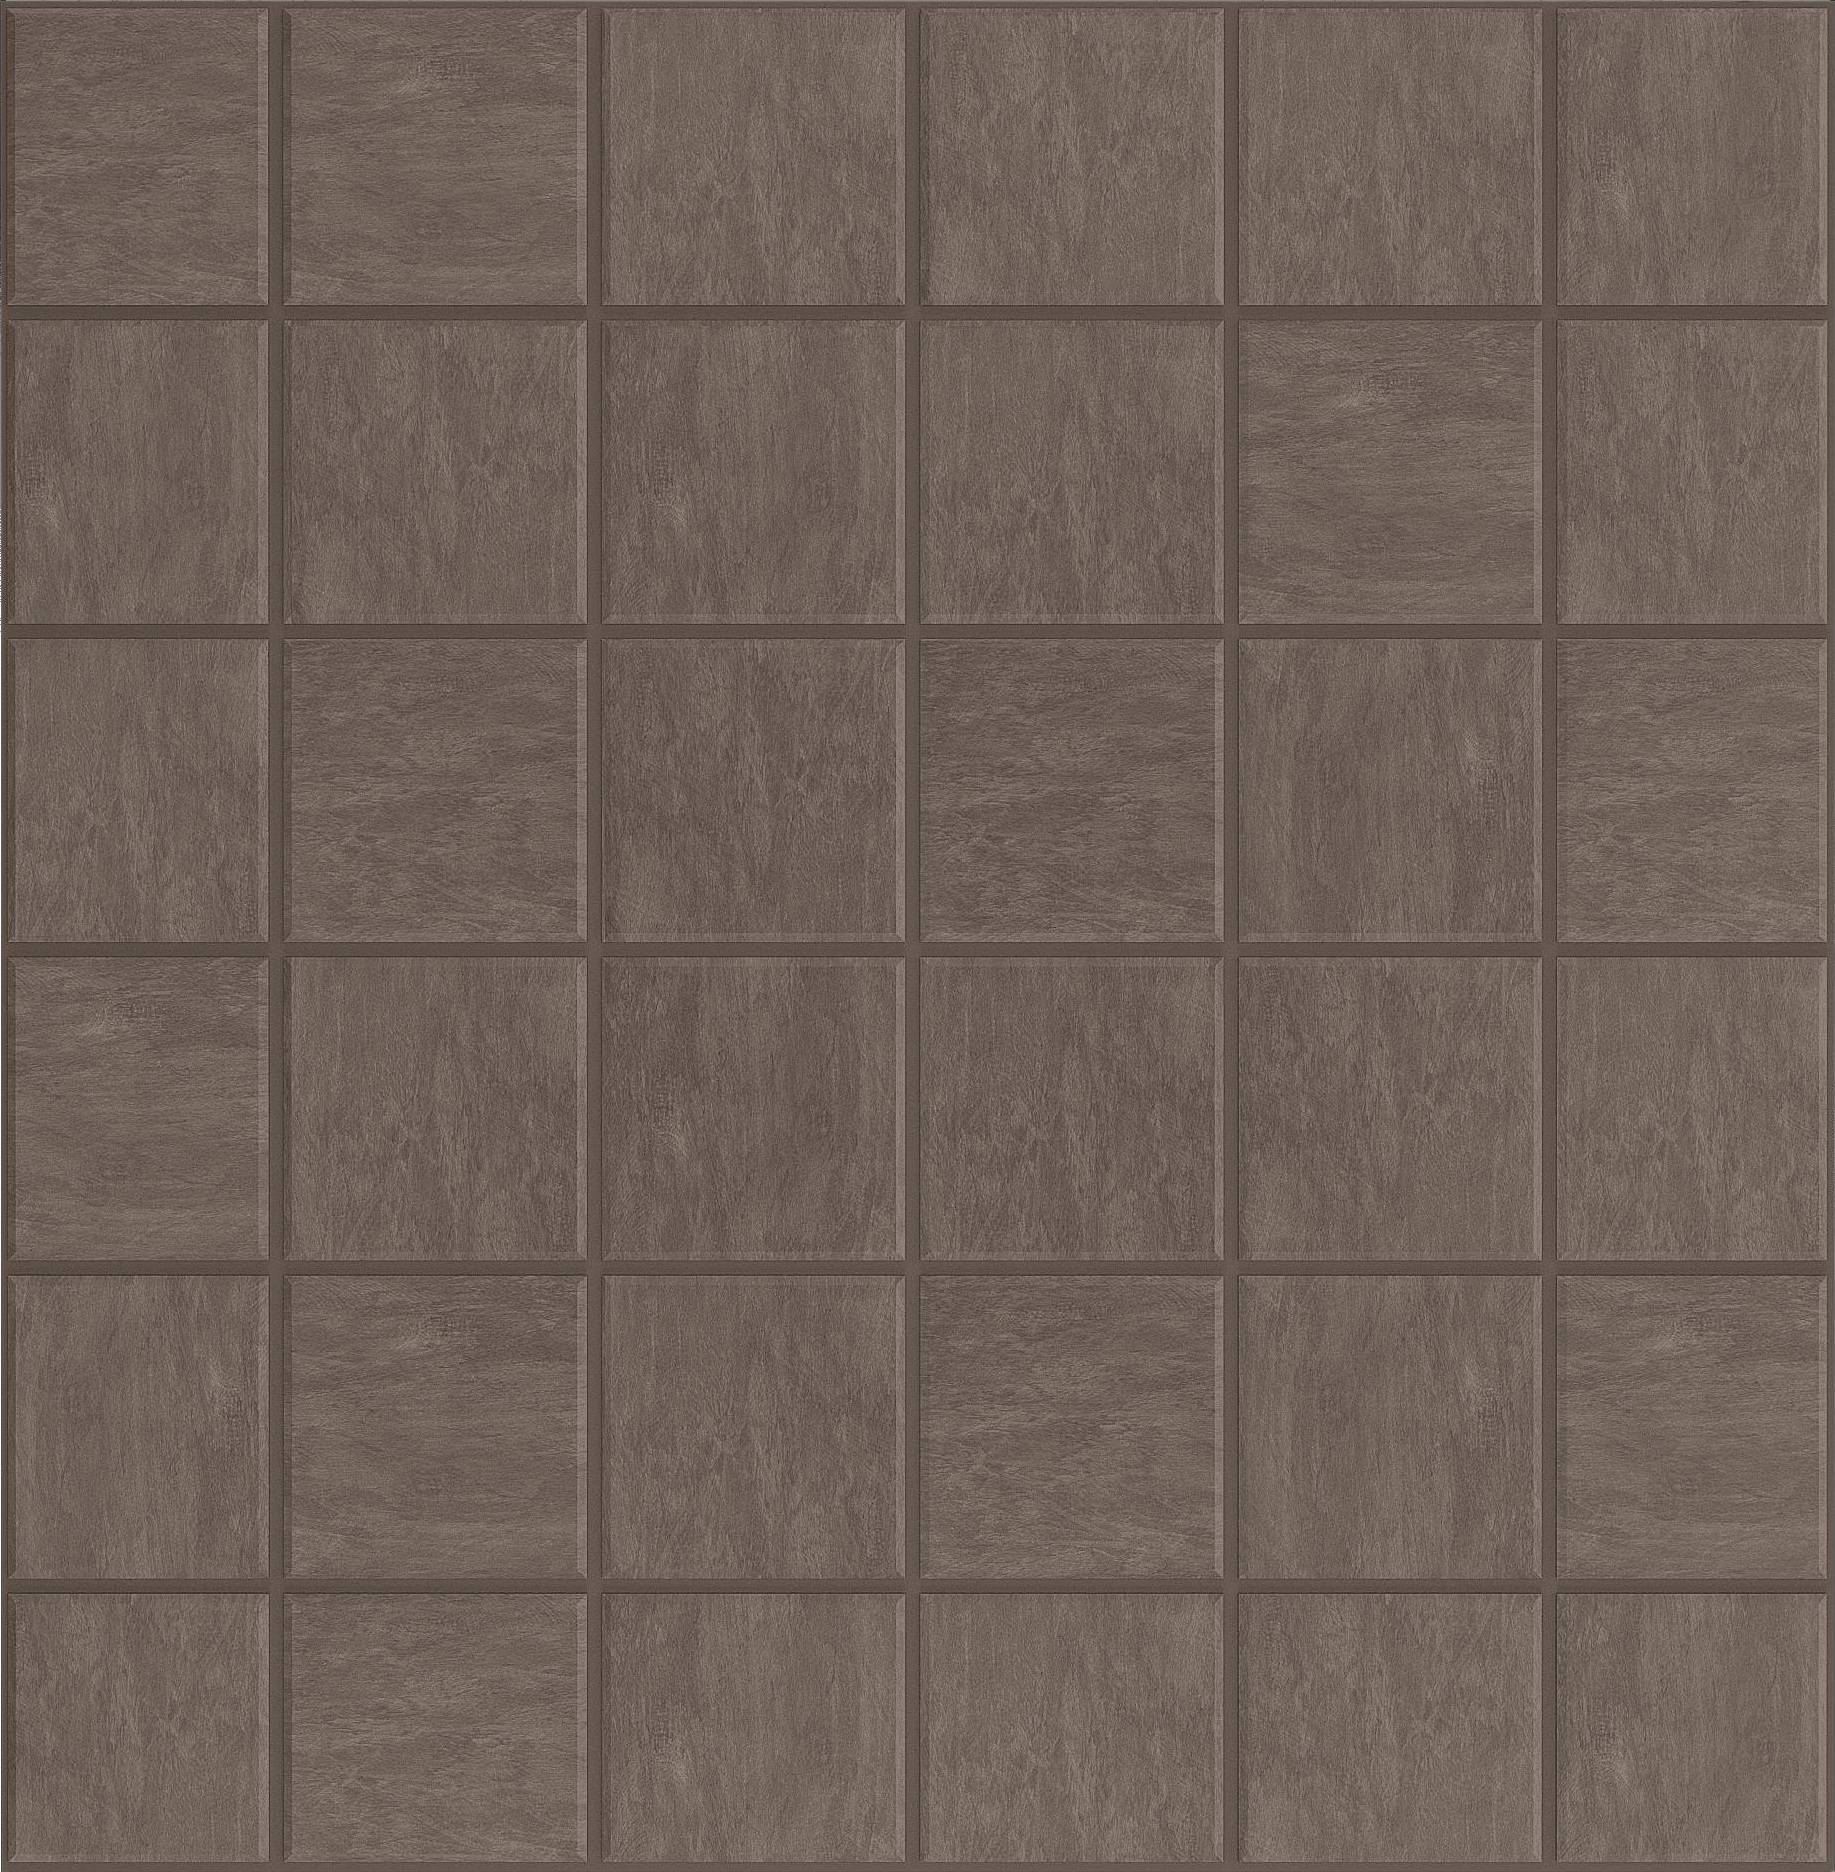 Мозаика Ametis Spectrum Chocolate SR07 (5x5) Непол. 30x30